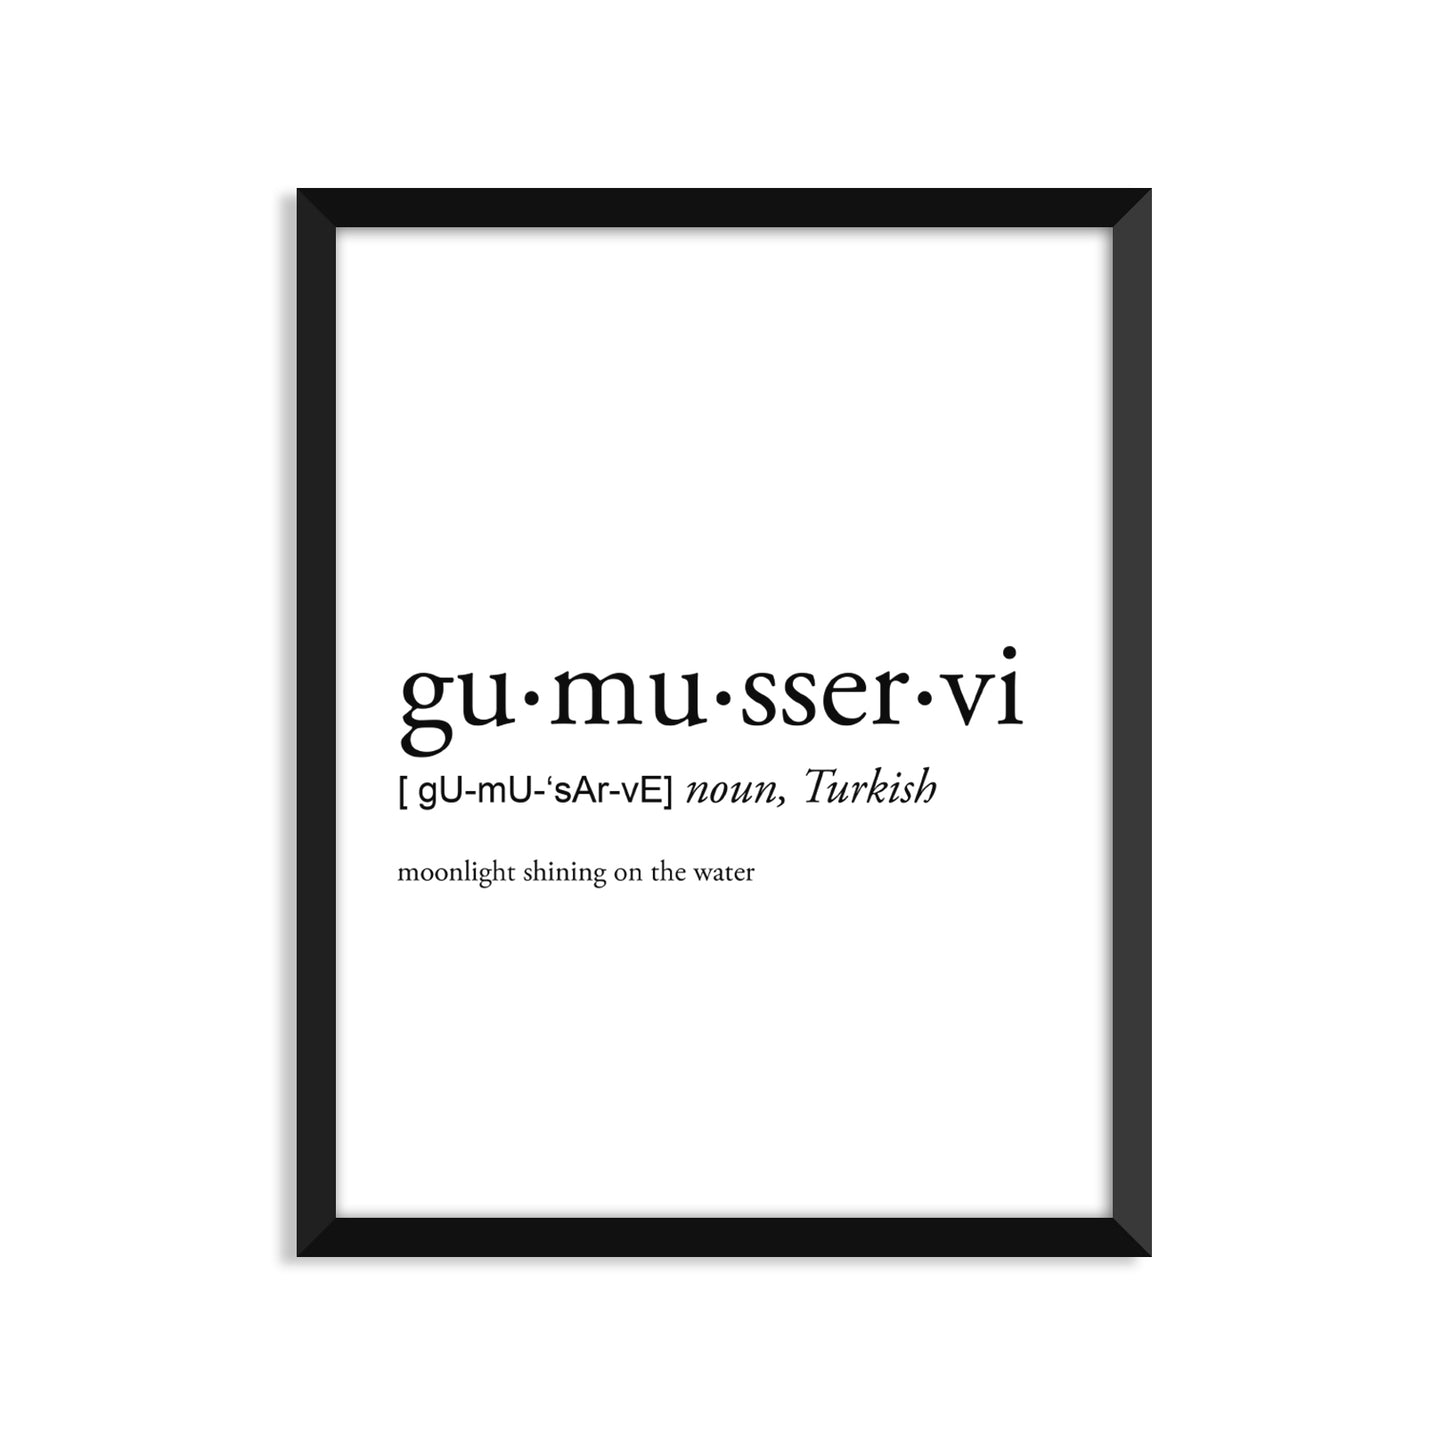 Gumusservi Definition Everyday Card